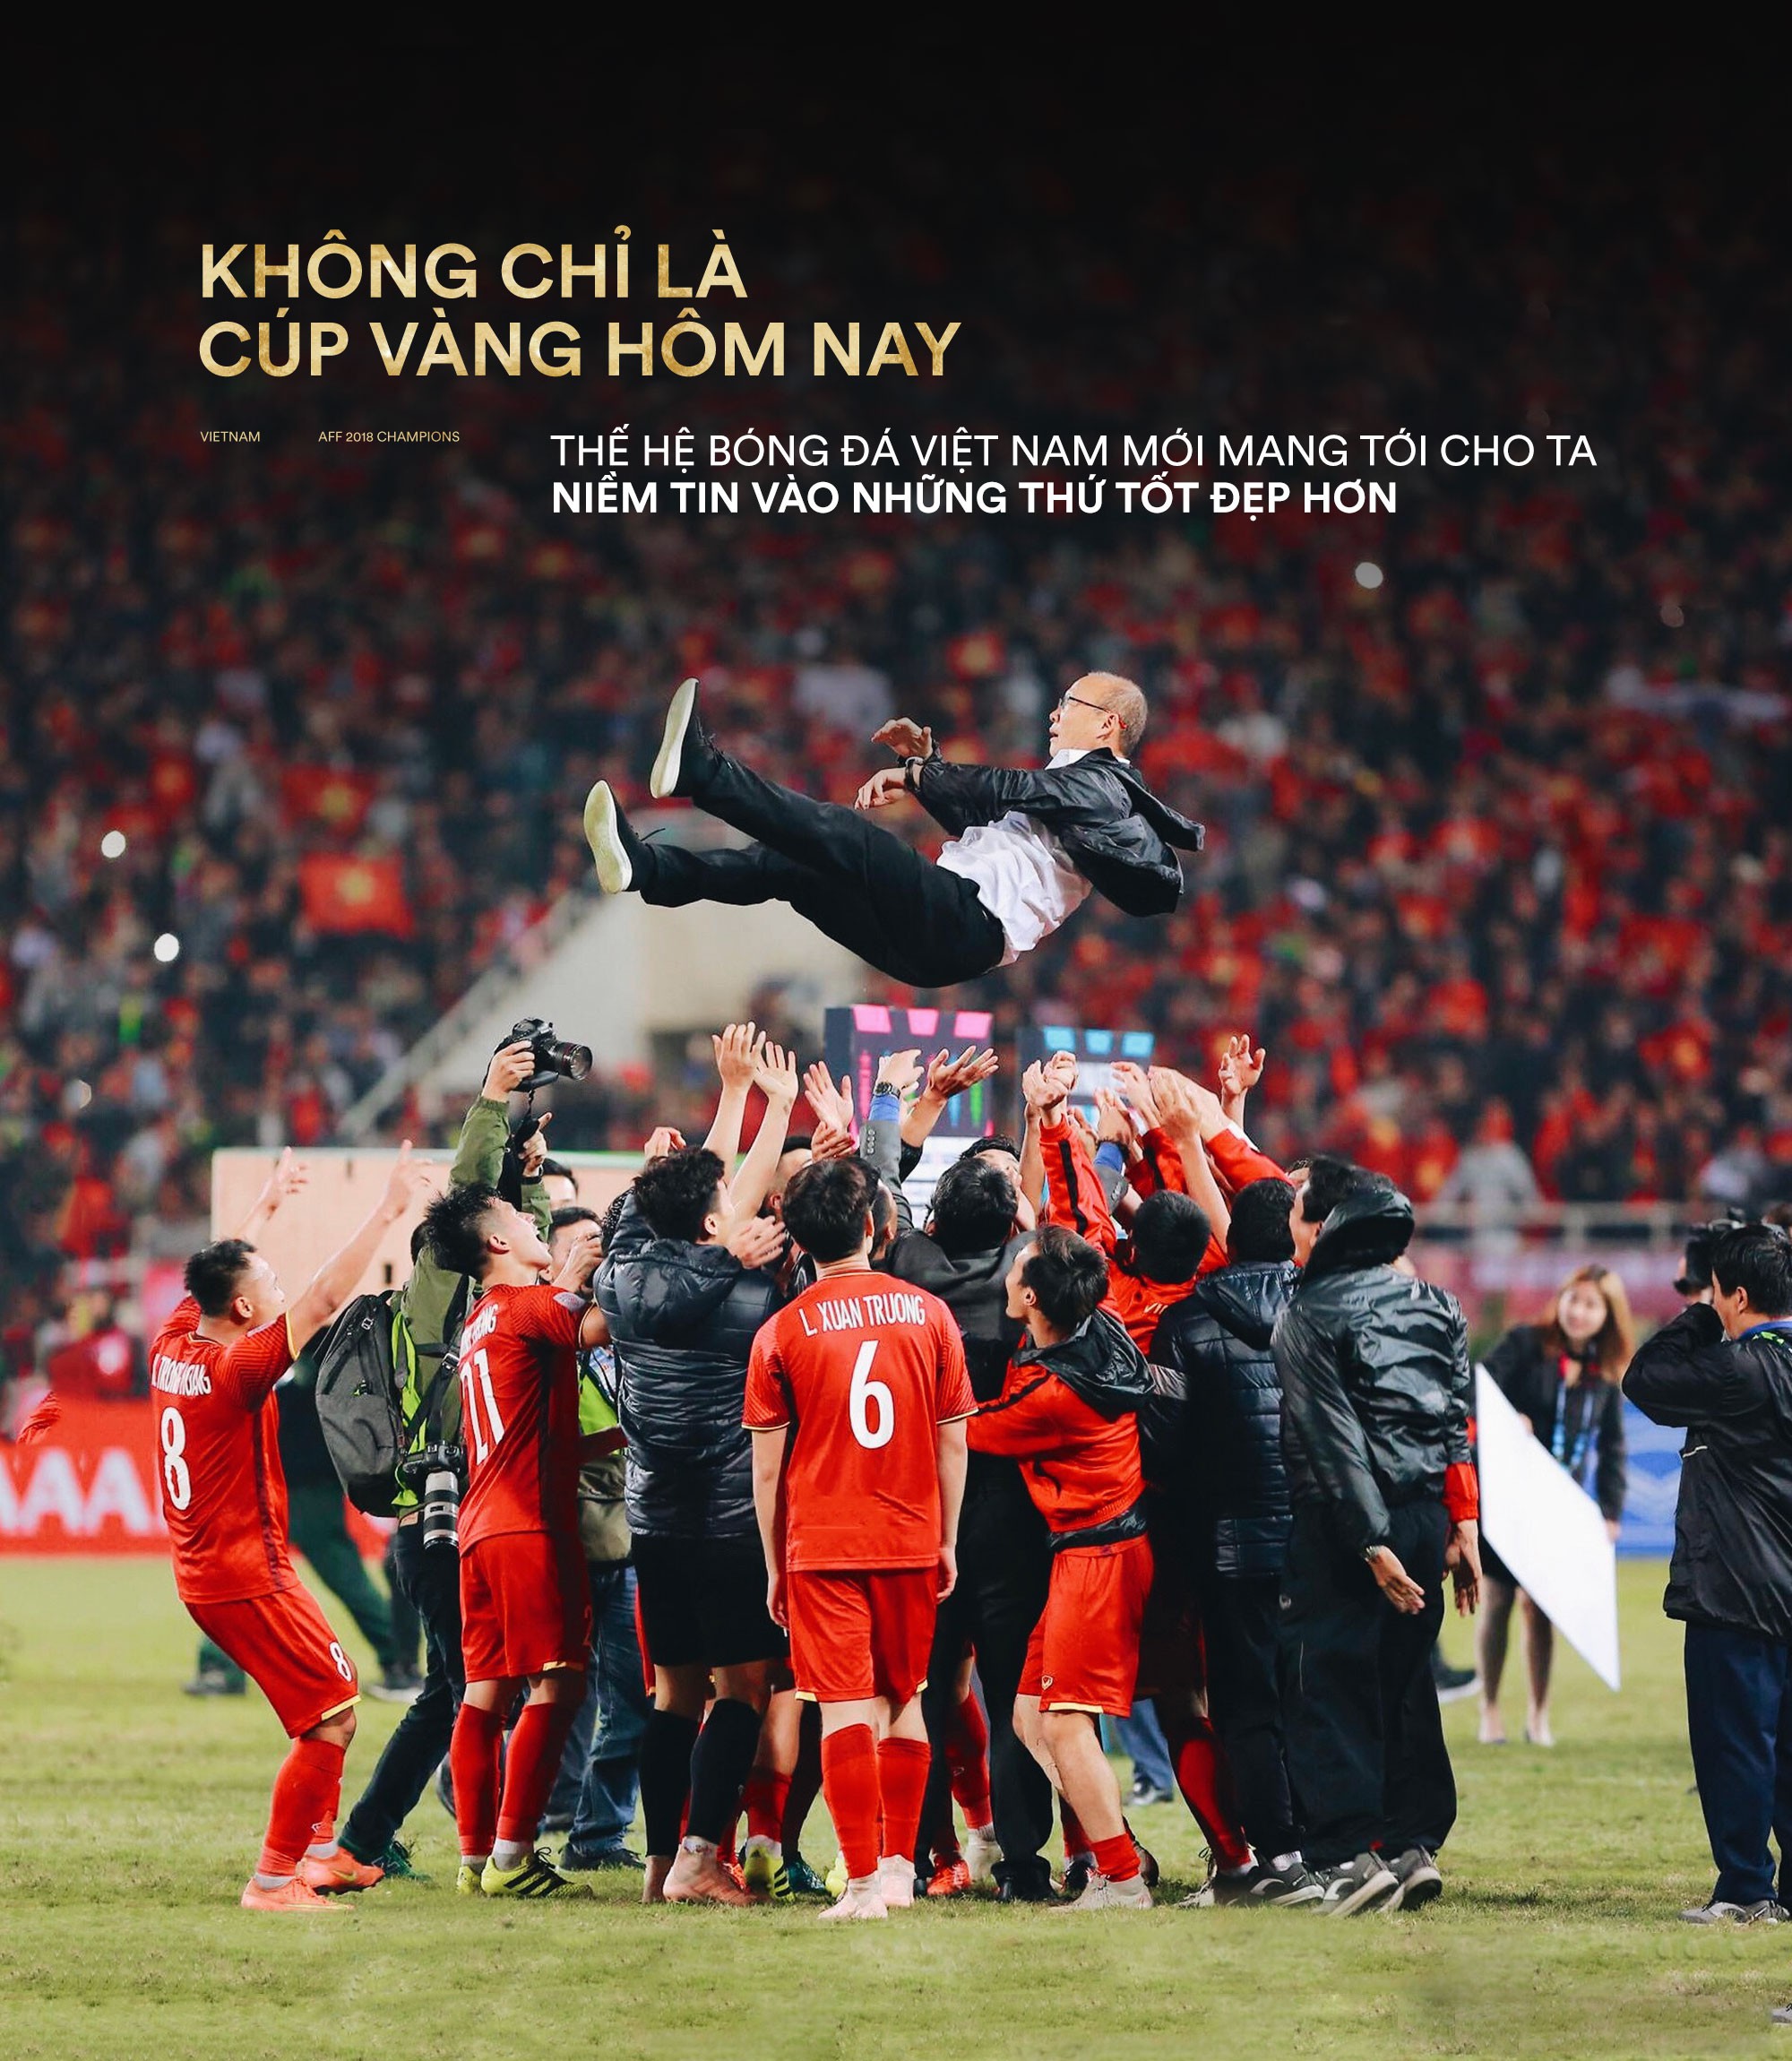 Không chỉ là cúp vàng hôm nay, thế hệ bóng đá Việt Nam mới mang tới cho ta niềm tin vào những thứ tốt đẹp hơn